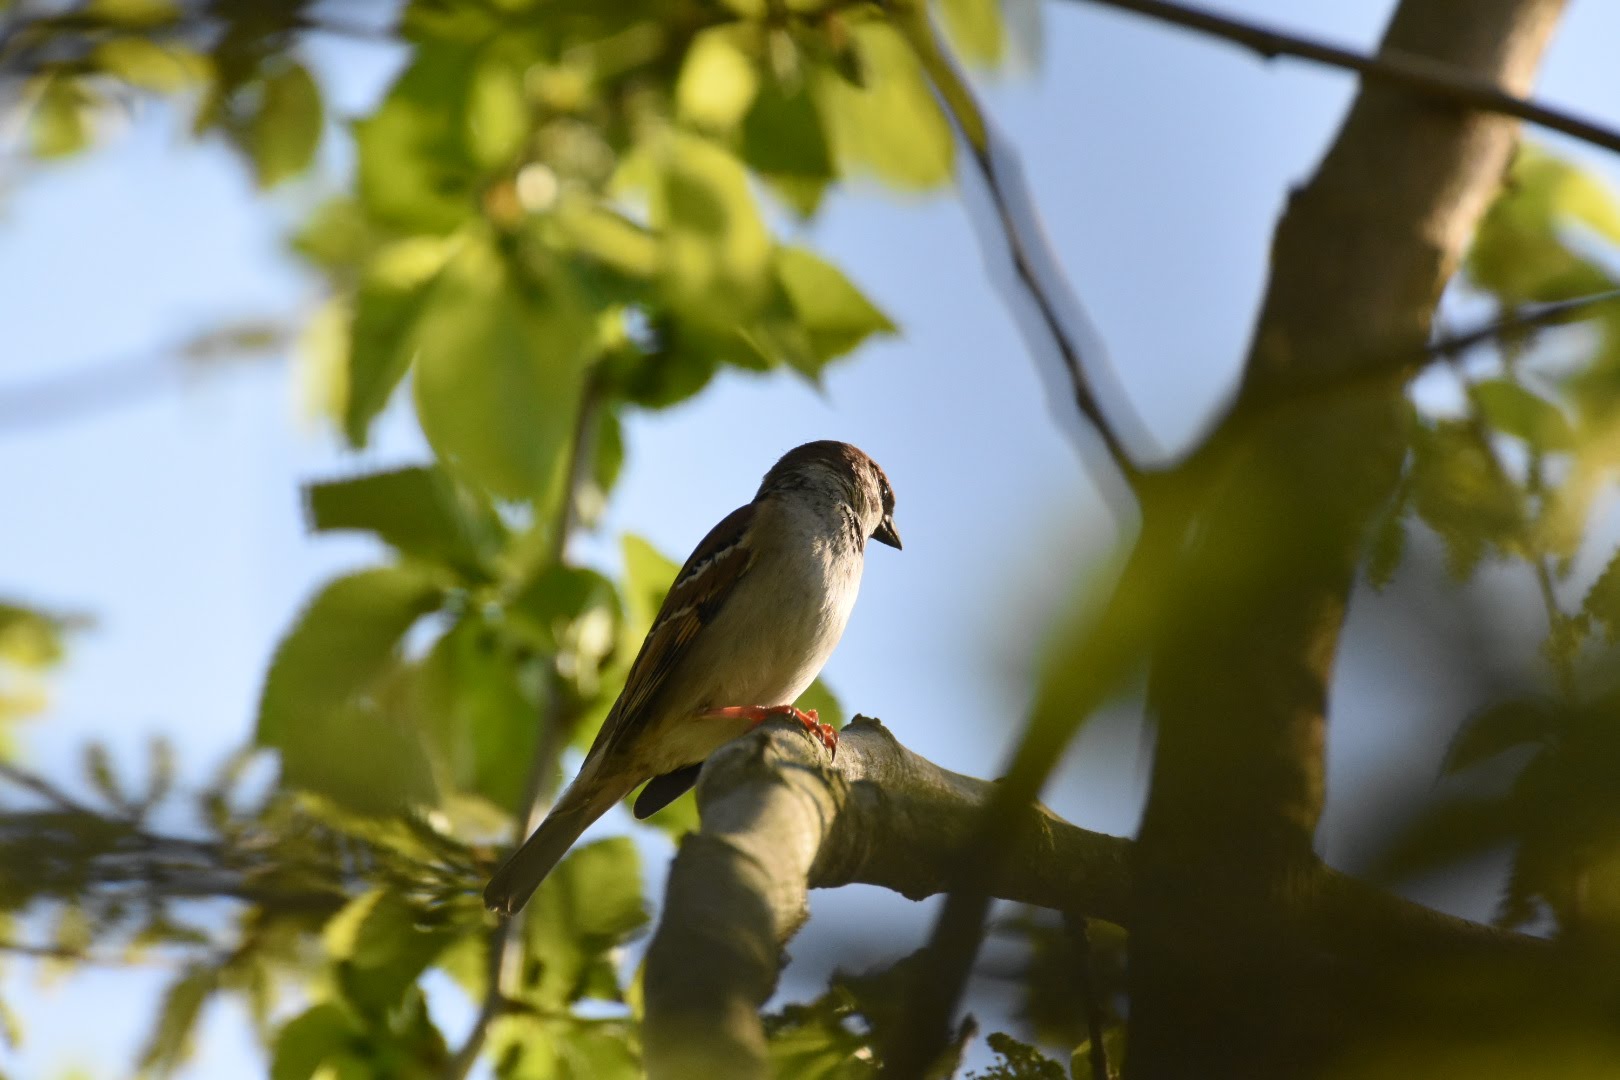 Sparrow in the Sun...